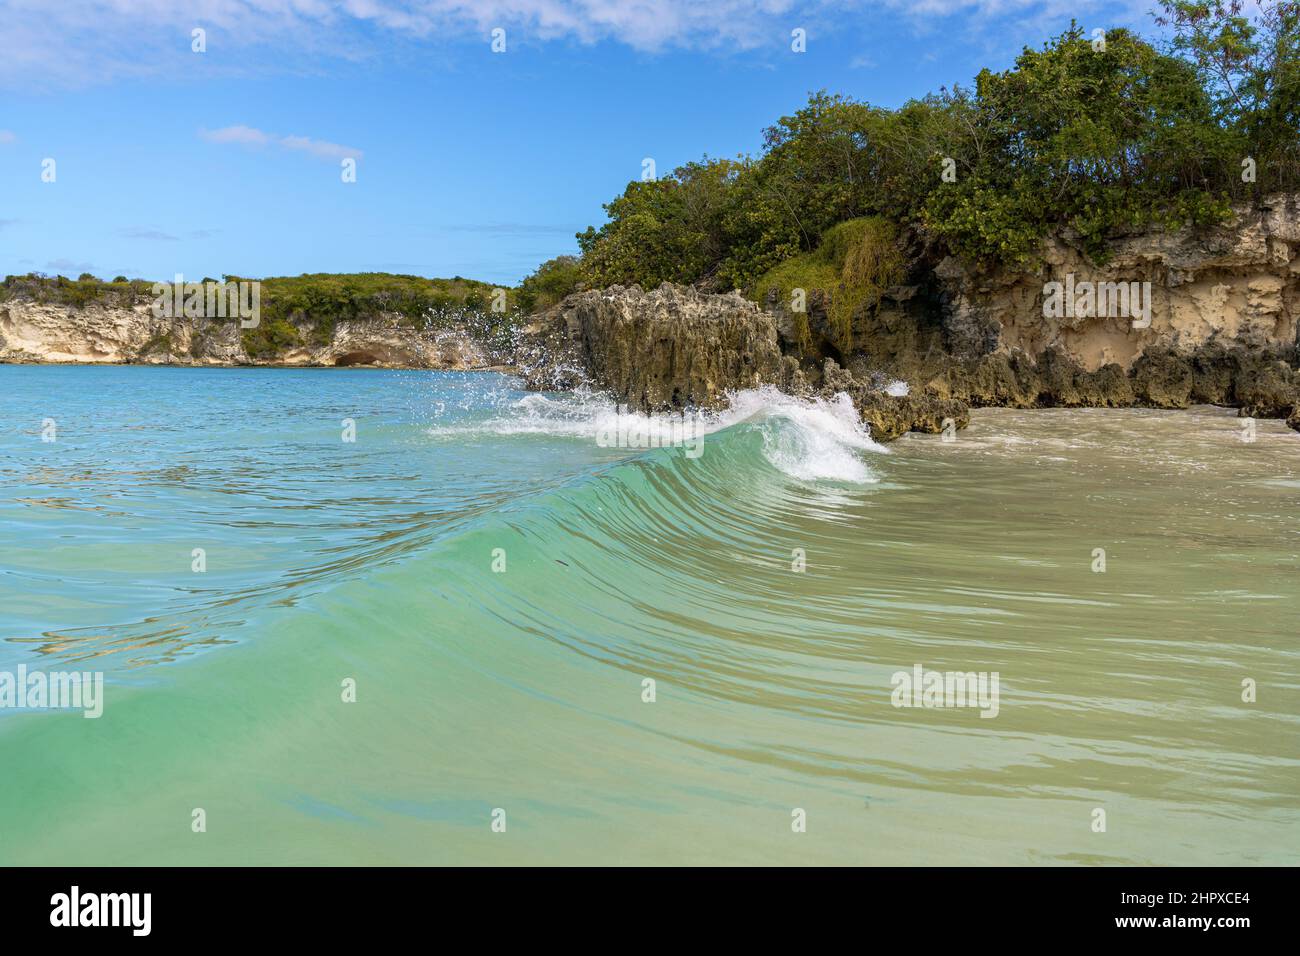 Playa de arena de Macao con un acantilado rocoso en Punta Cana, República Dominicana Foto de stock